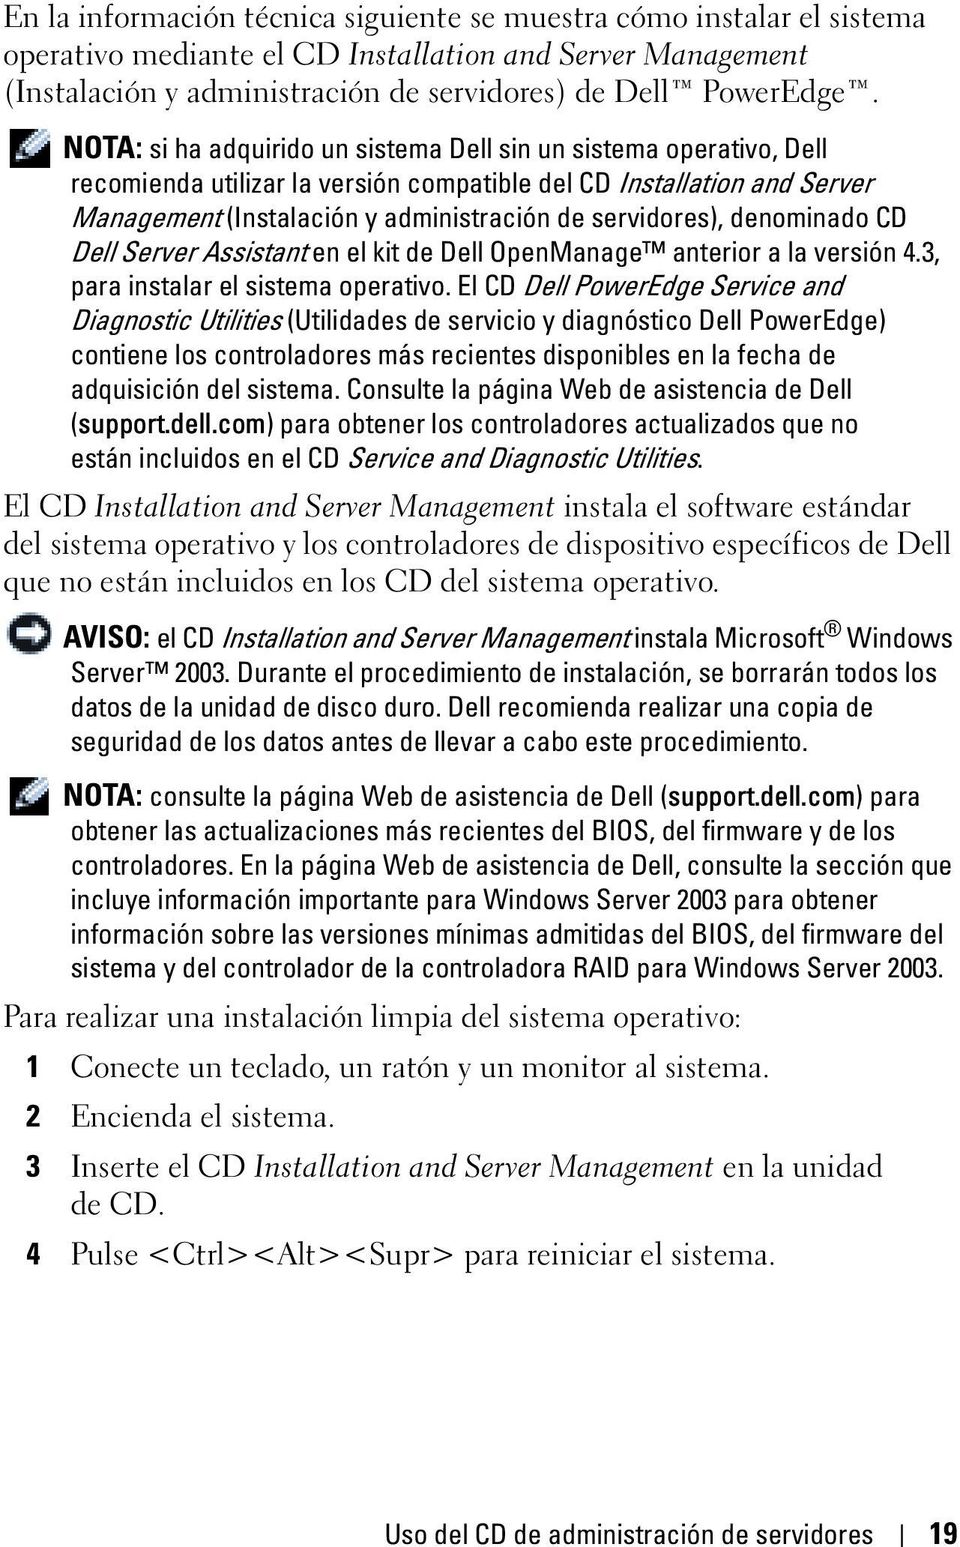 denominado CD Dell Server Assistant en el kit de Dell OpenManage anterior a la versión 4.3, para instalar el sistema operativo.